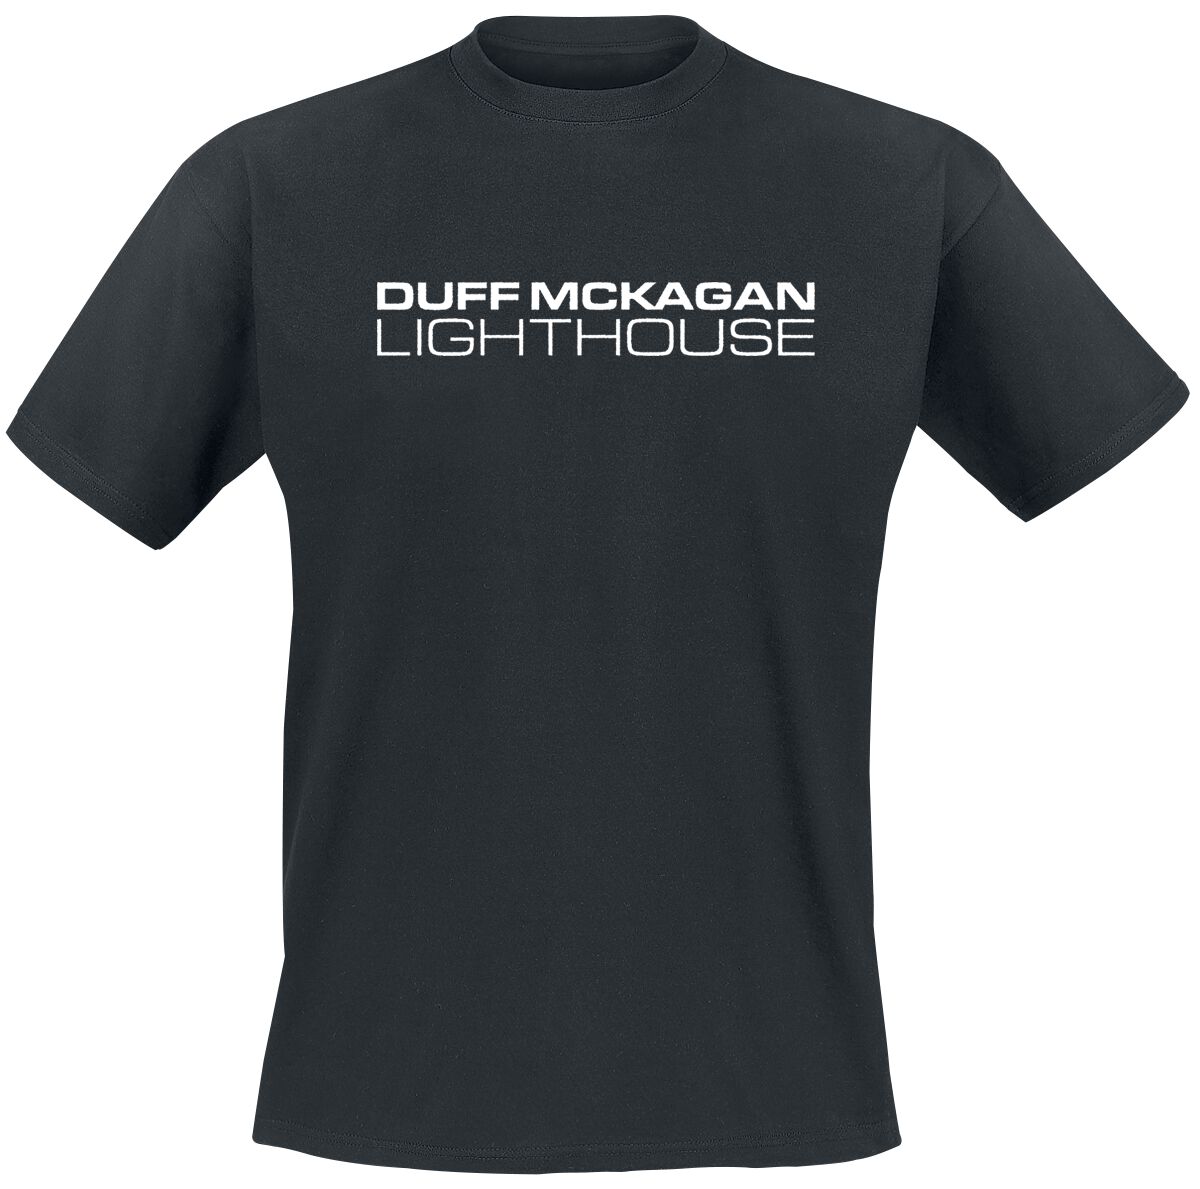 McKagan, Duff T-Shirt - Lighthouse - S bis XXL - für Männer - Größe XL - schwarz  - Lizenziertes Merchandise!